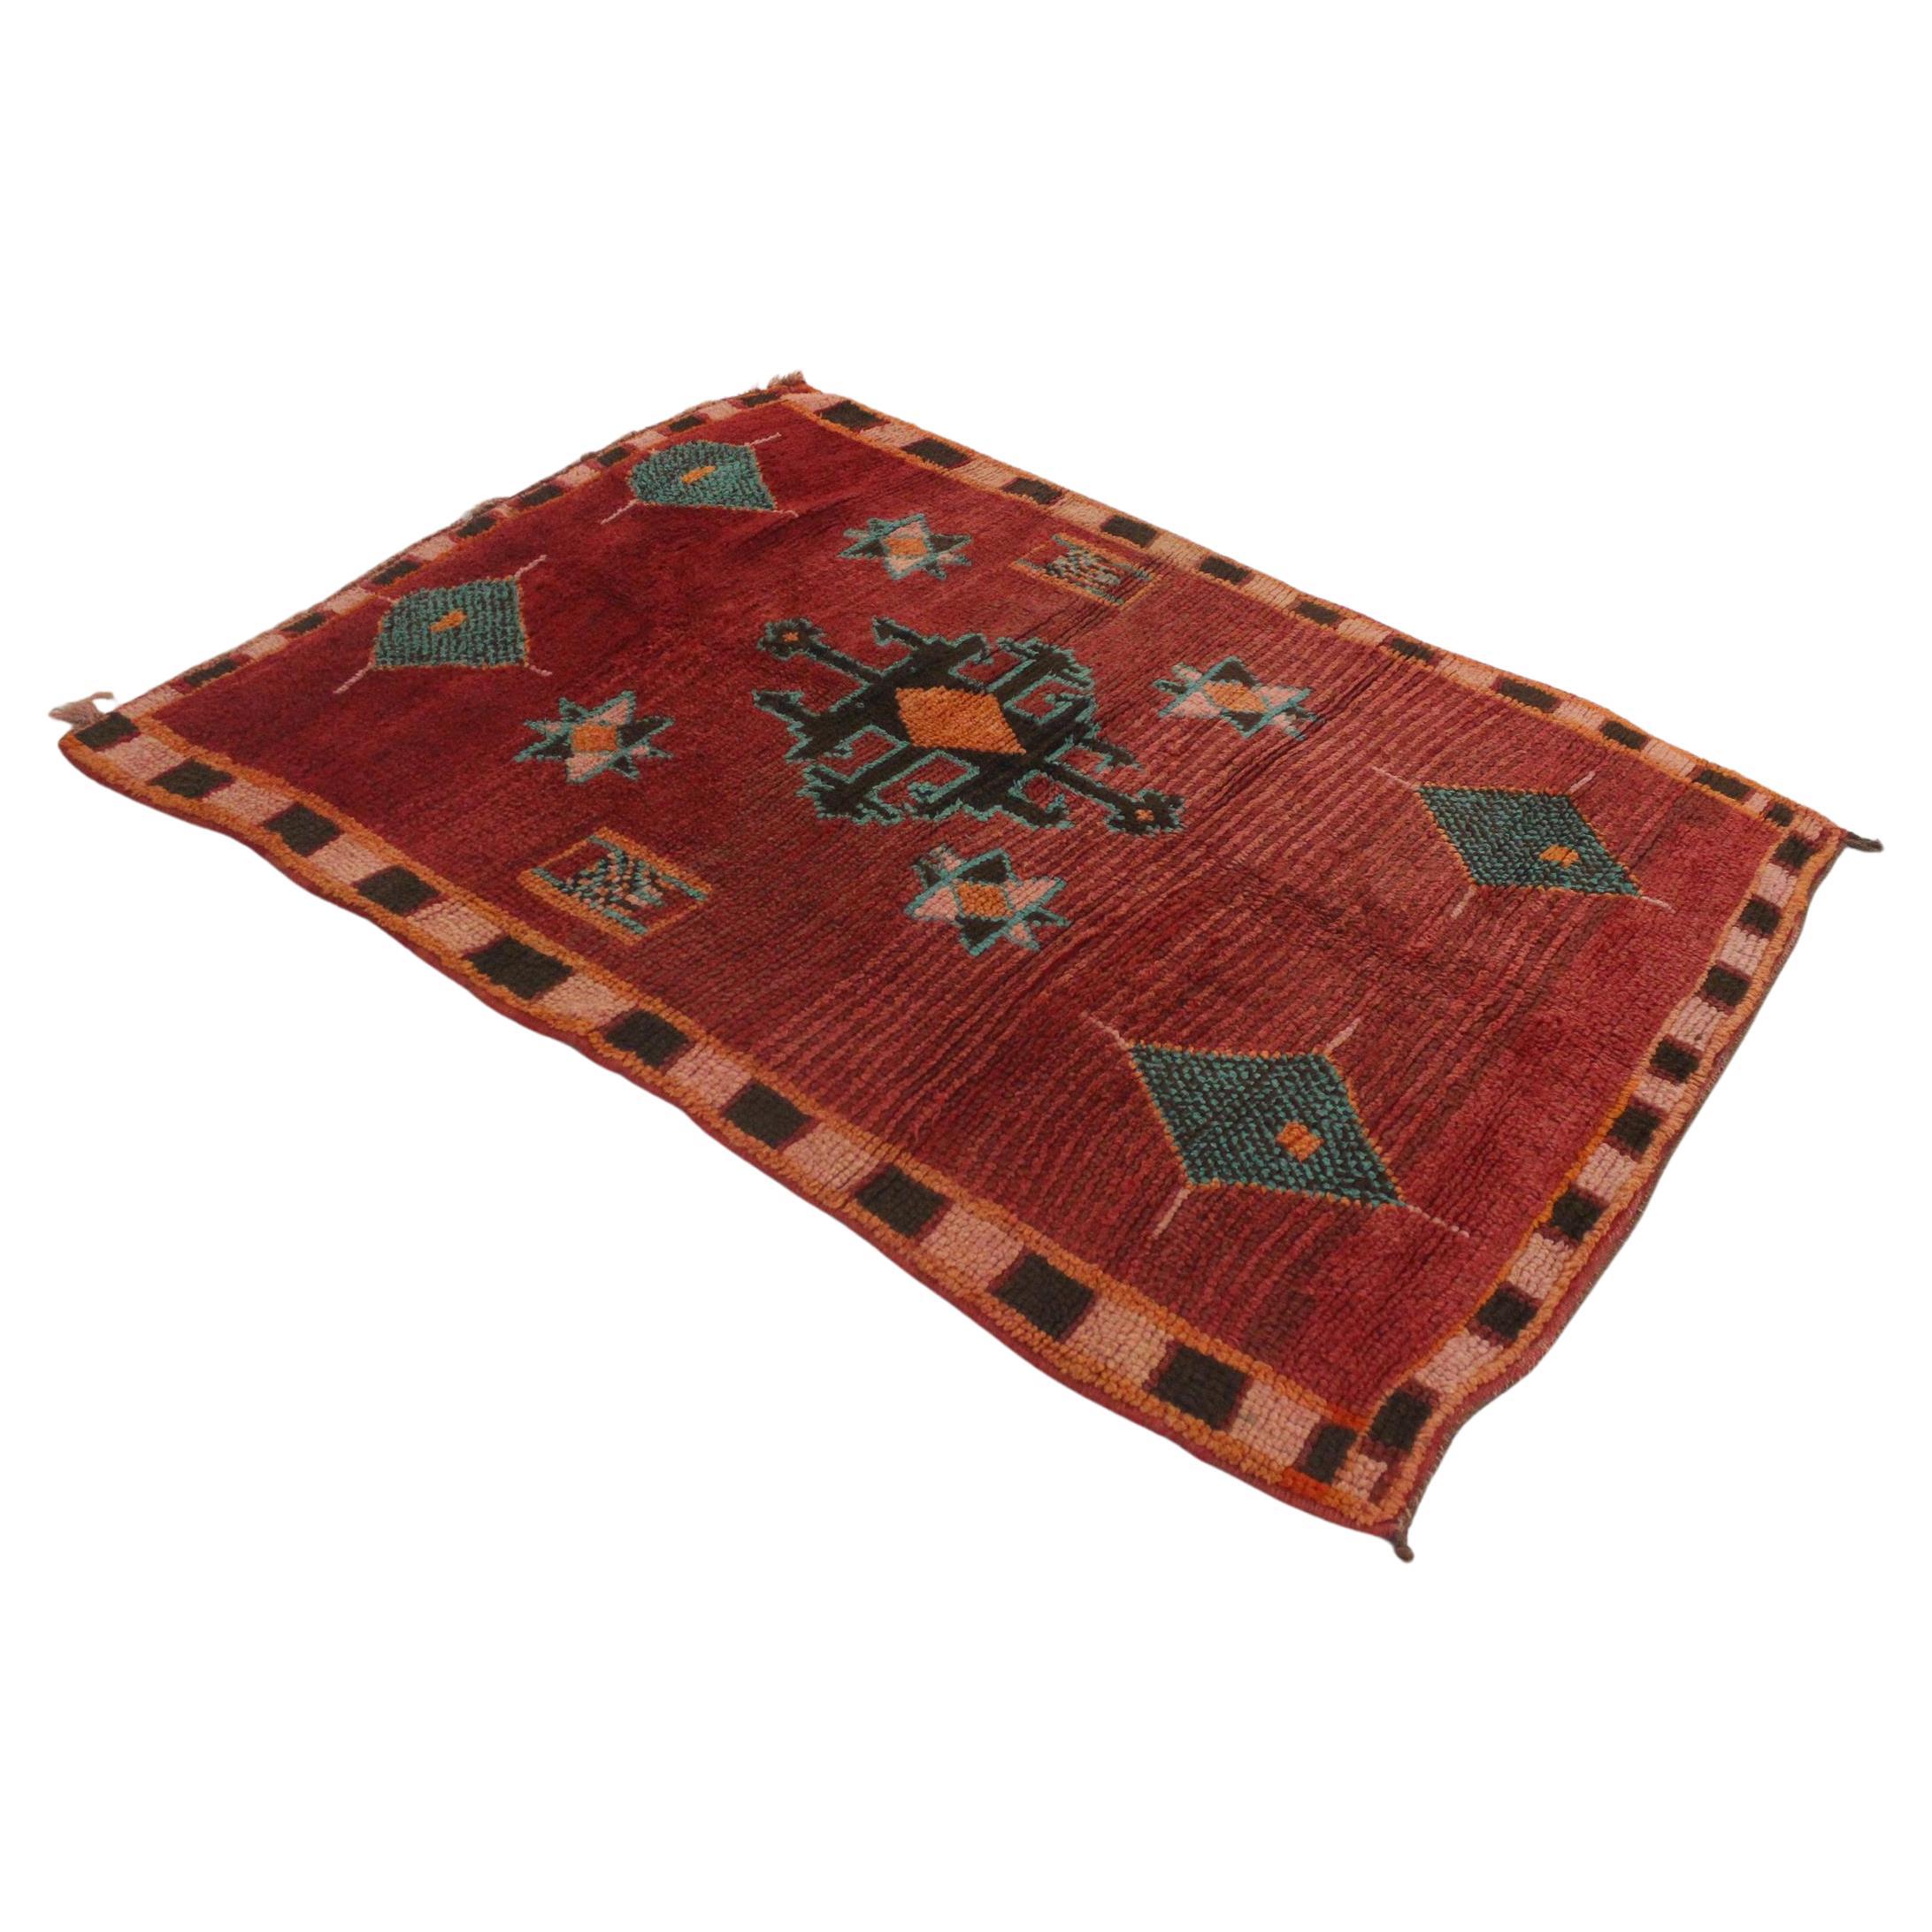 Marokkanischer Azilal-Teppich im Vintage-Stil - Rot und Türkis - 4.1x5.8feet / 127x177cm